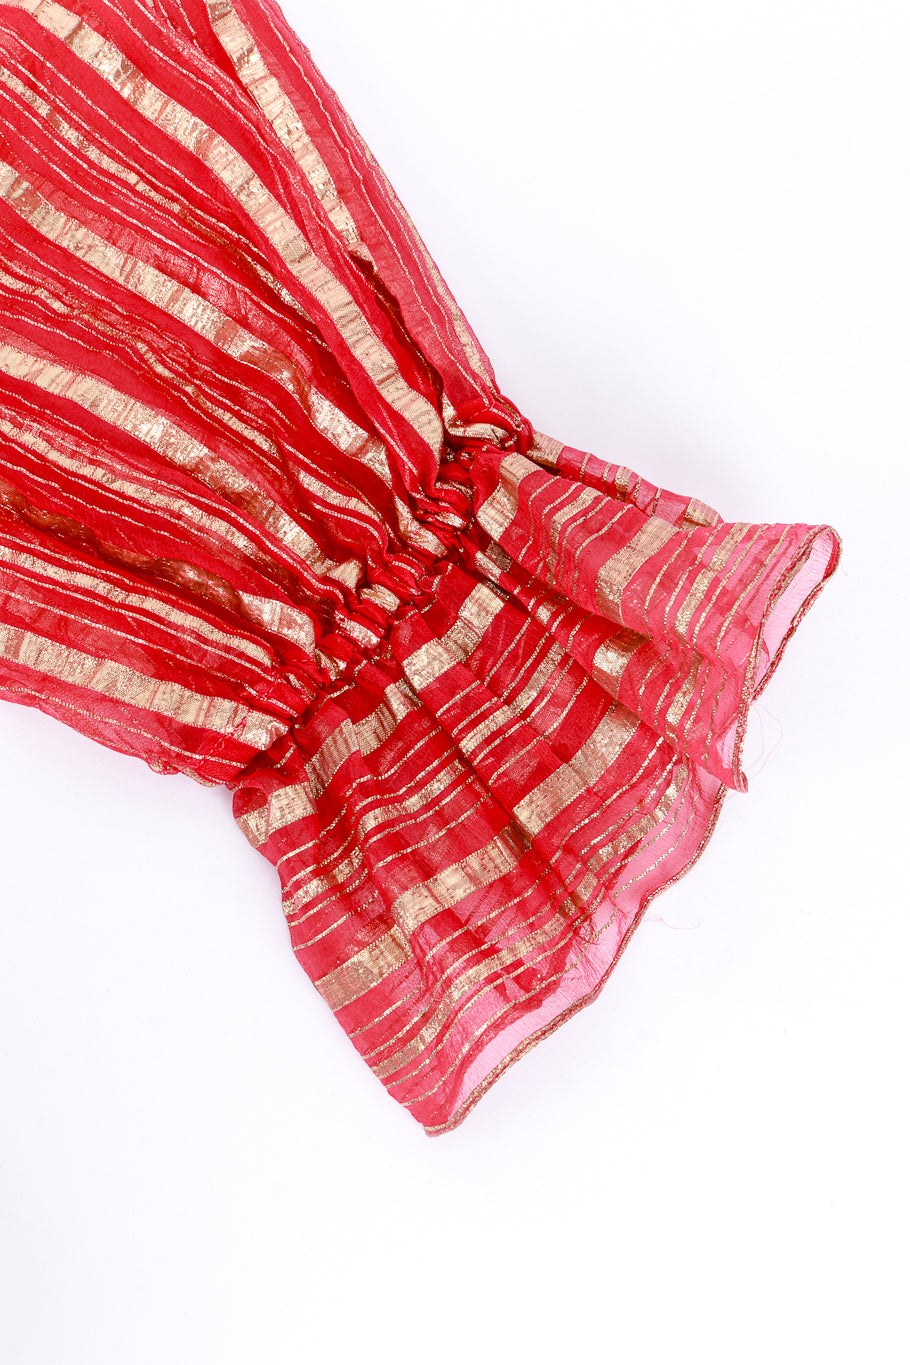 Vintage Diane Dickinson Lamé Striped Maxi Dress cuff detail @RECESS LA